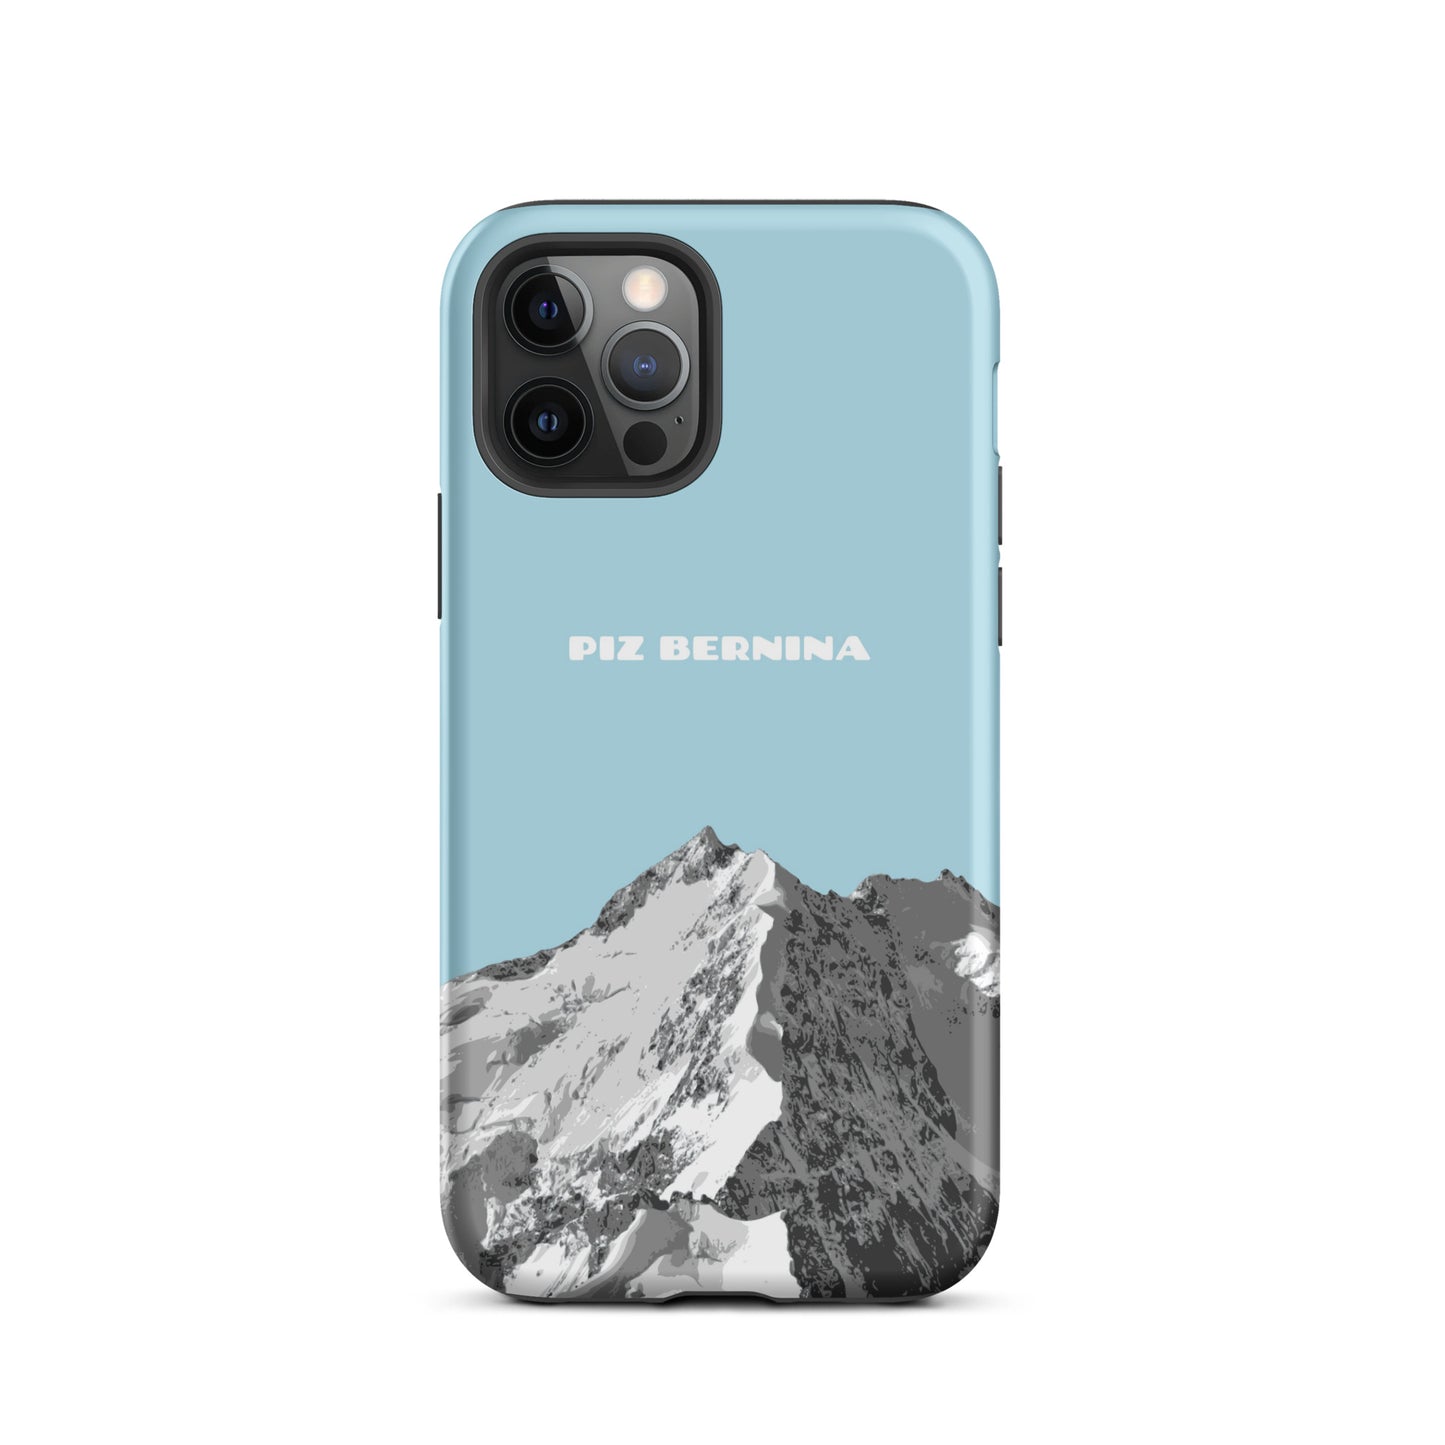 Hülle für das iPhone 12 Pro von Apple in der Farbe Hellblau, dass den Piz Bernina in Graubünden zeigt.